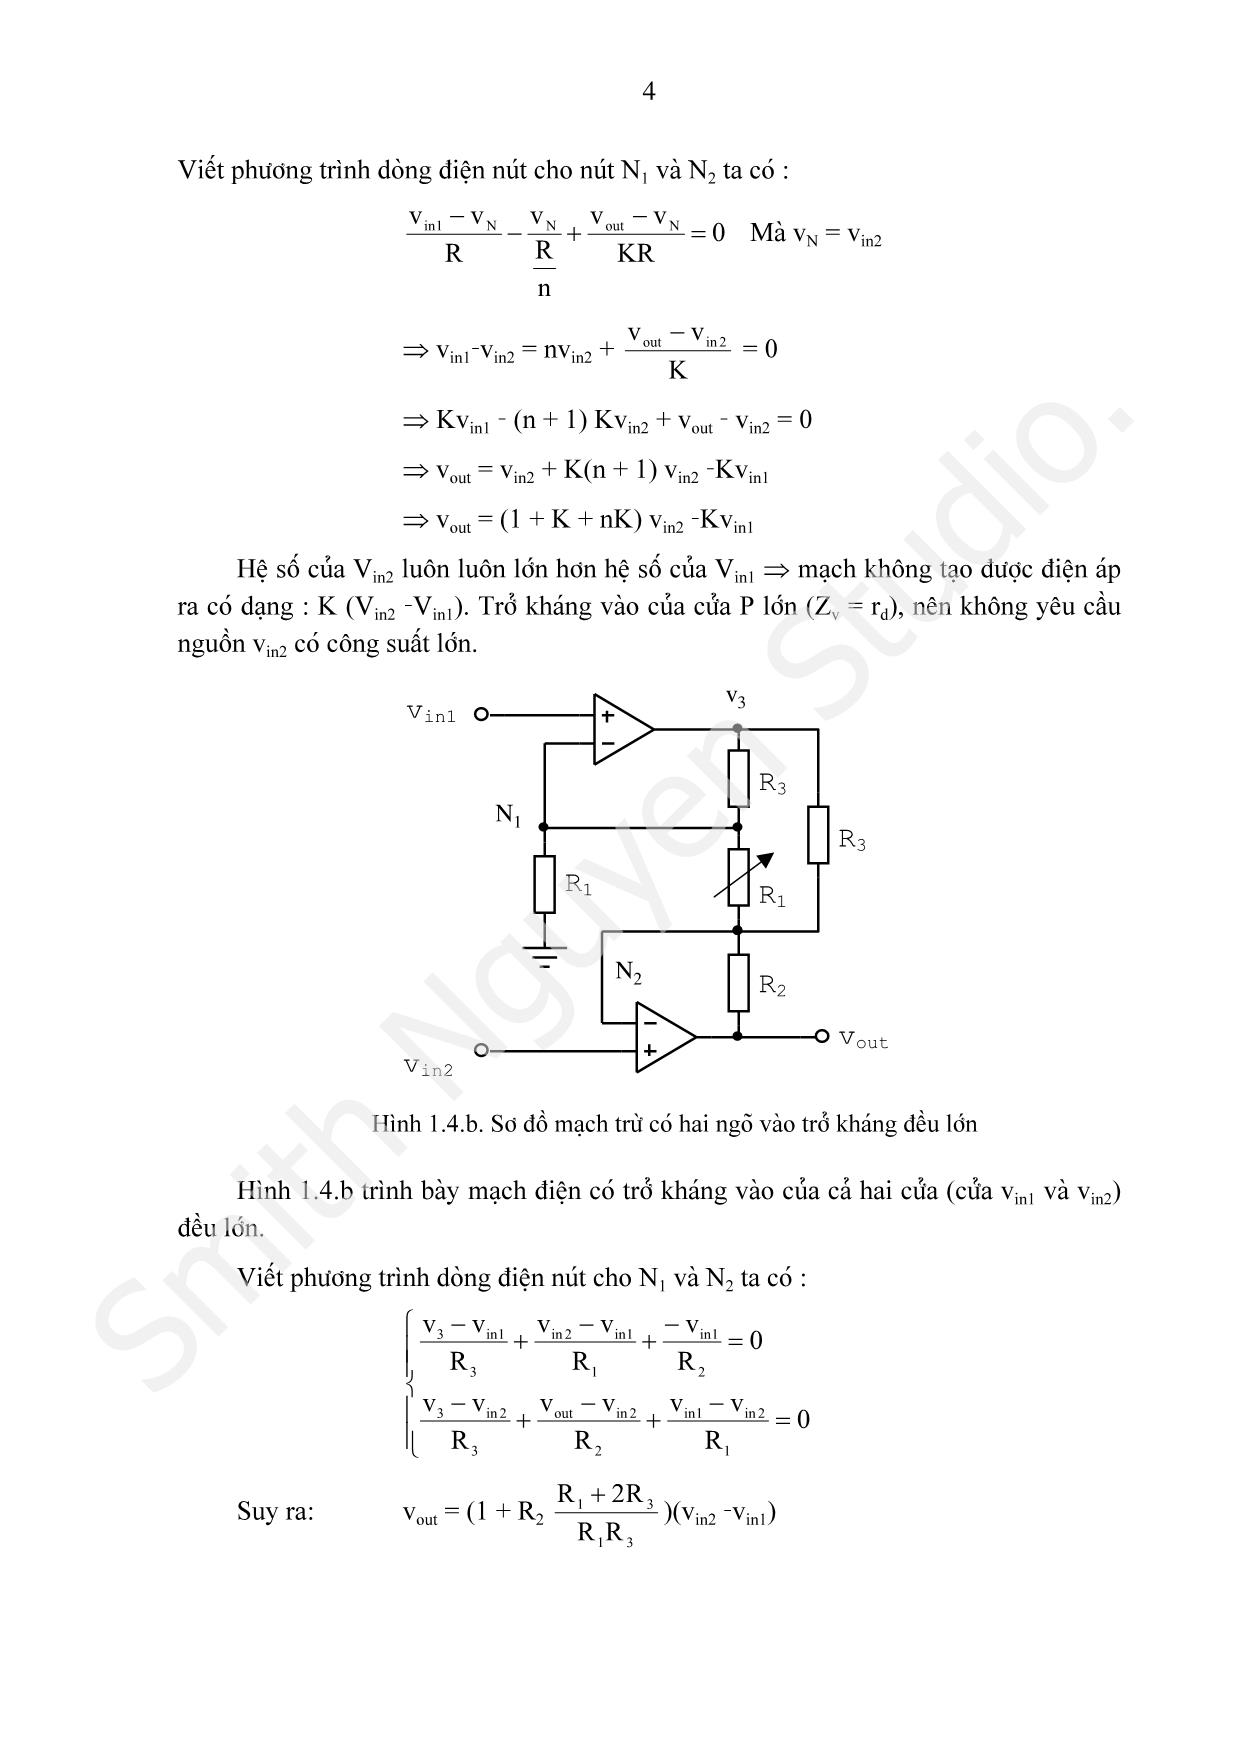 Bài giảng Các mạch tính toán, điều khiển và tạo hàm dùng khuếch đại thuật toán trang 4